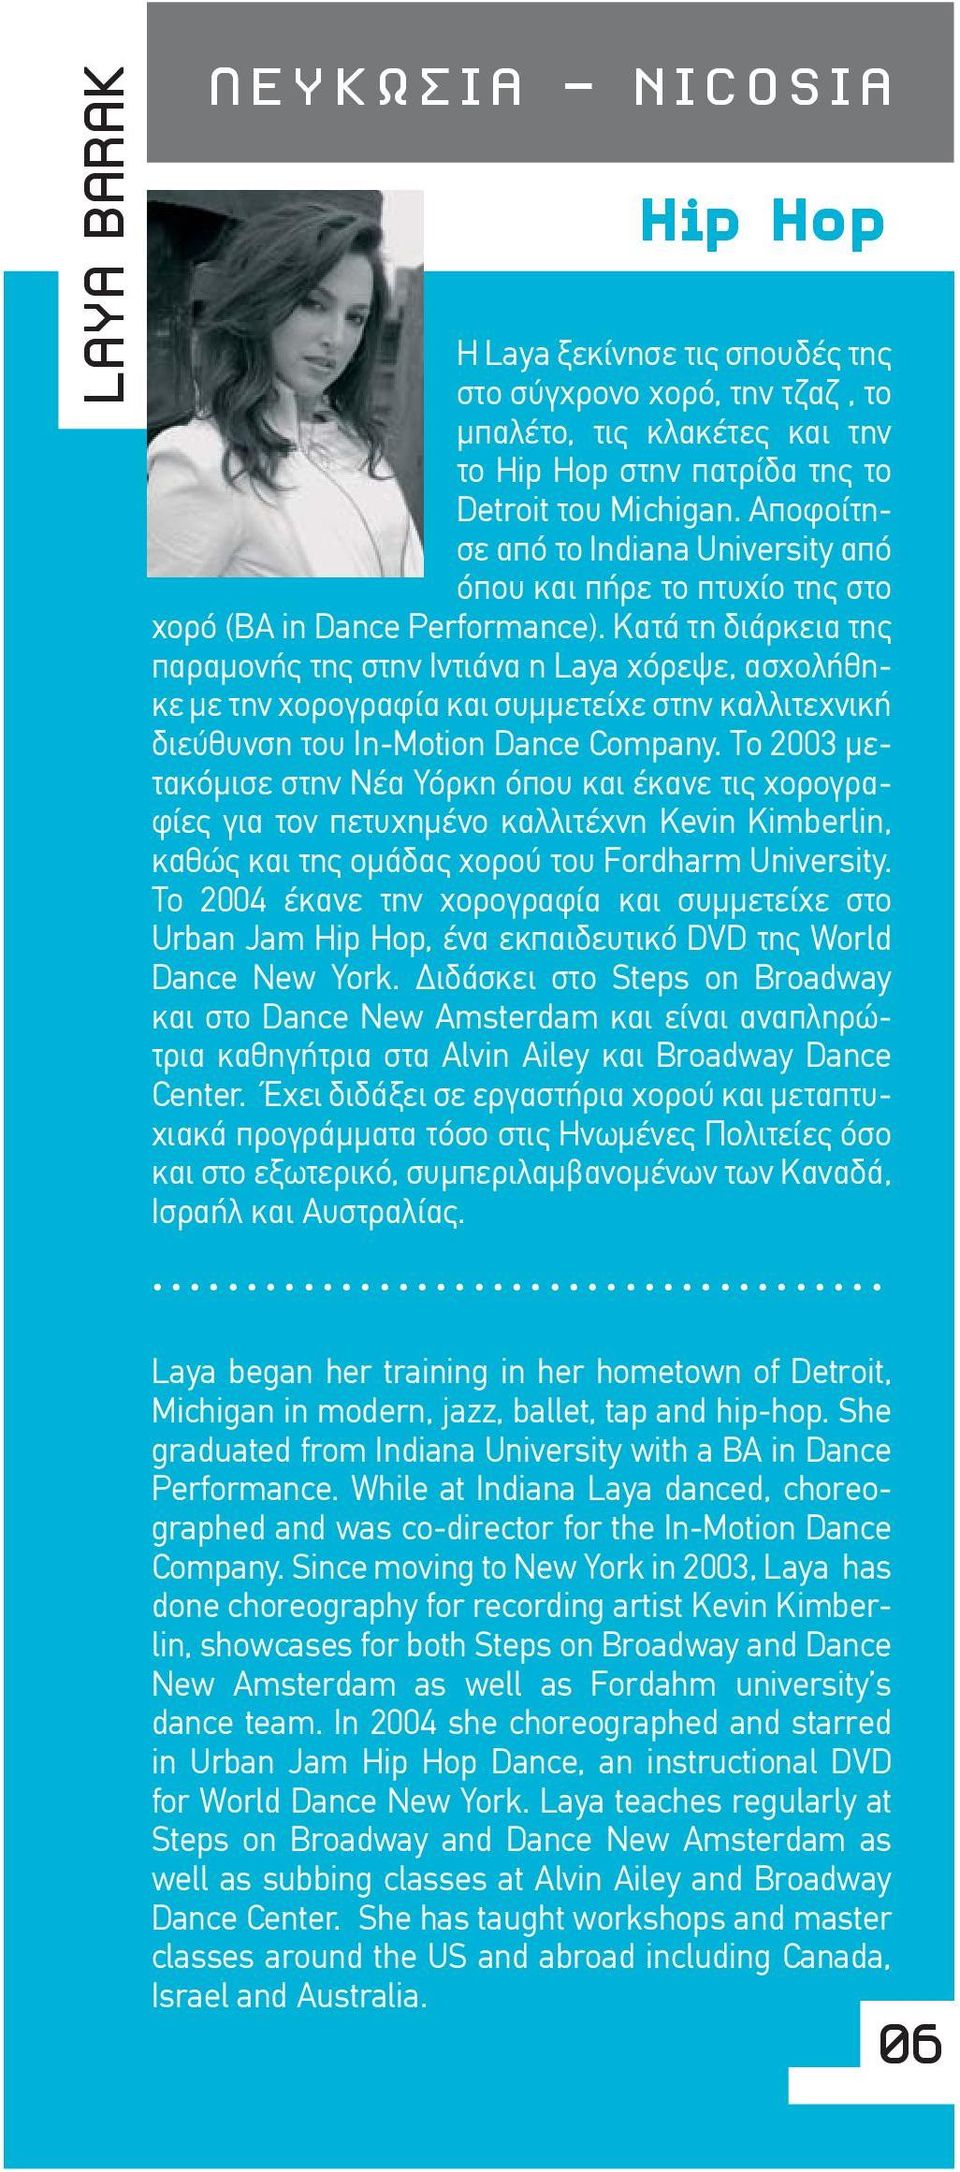 Κατά τη διάρκεια της παραμονής της στην Ιντιάνα η Laya χόρεψε, ασχολήθηκε με την χορογραφία και συμμετείχε στην καλλιτεχνική διεύθυνση του In-Motion Dance Company.